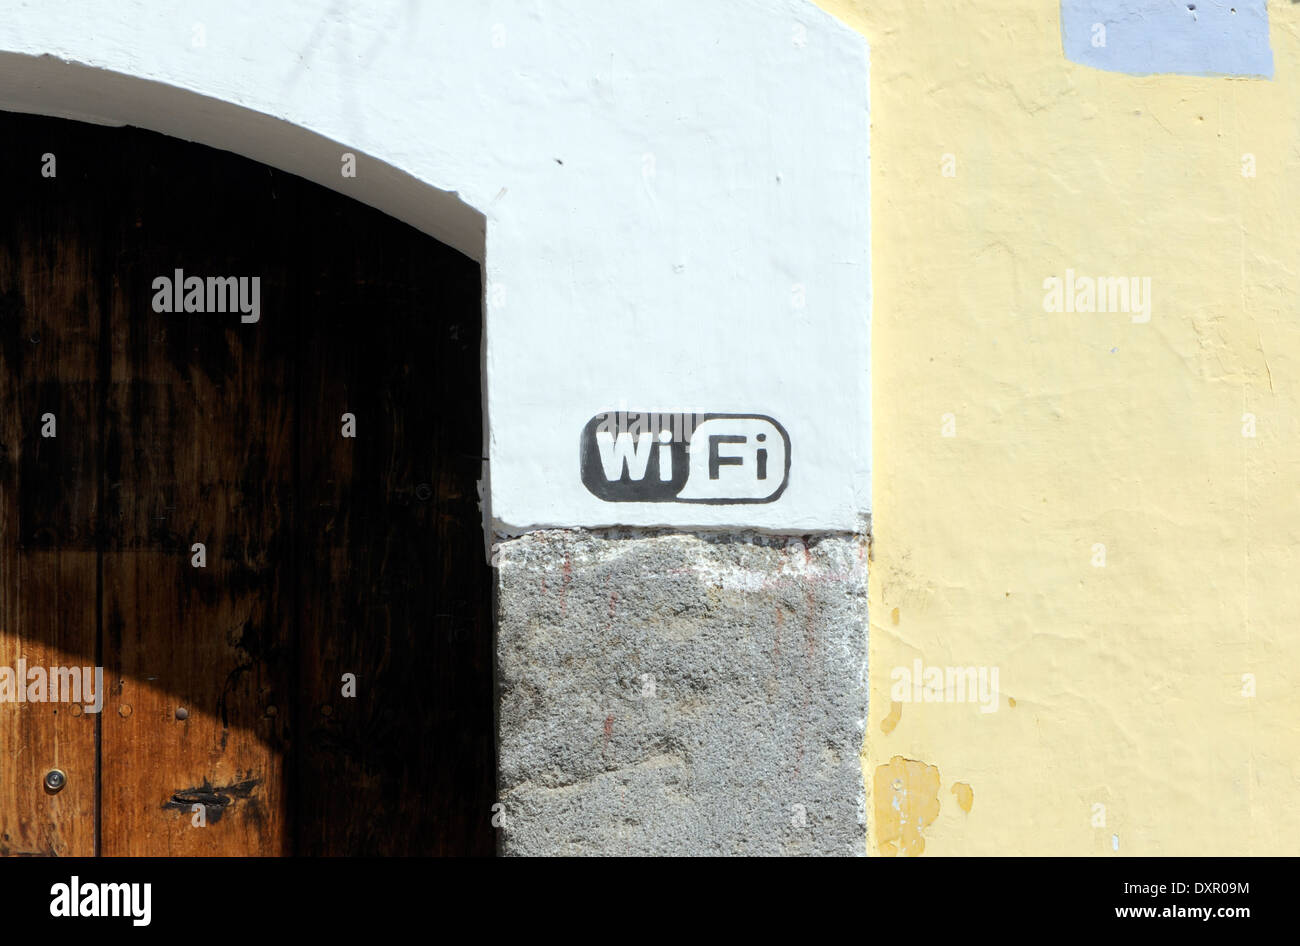 Accesso WiFi su una parete. Antigua Guatemala, Repubblica del Guatemala. Foto Stock